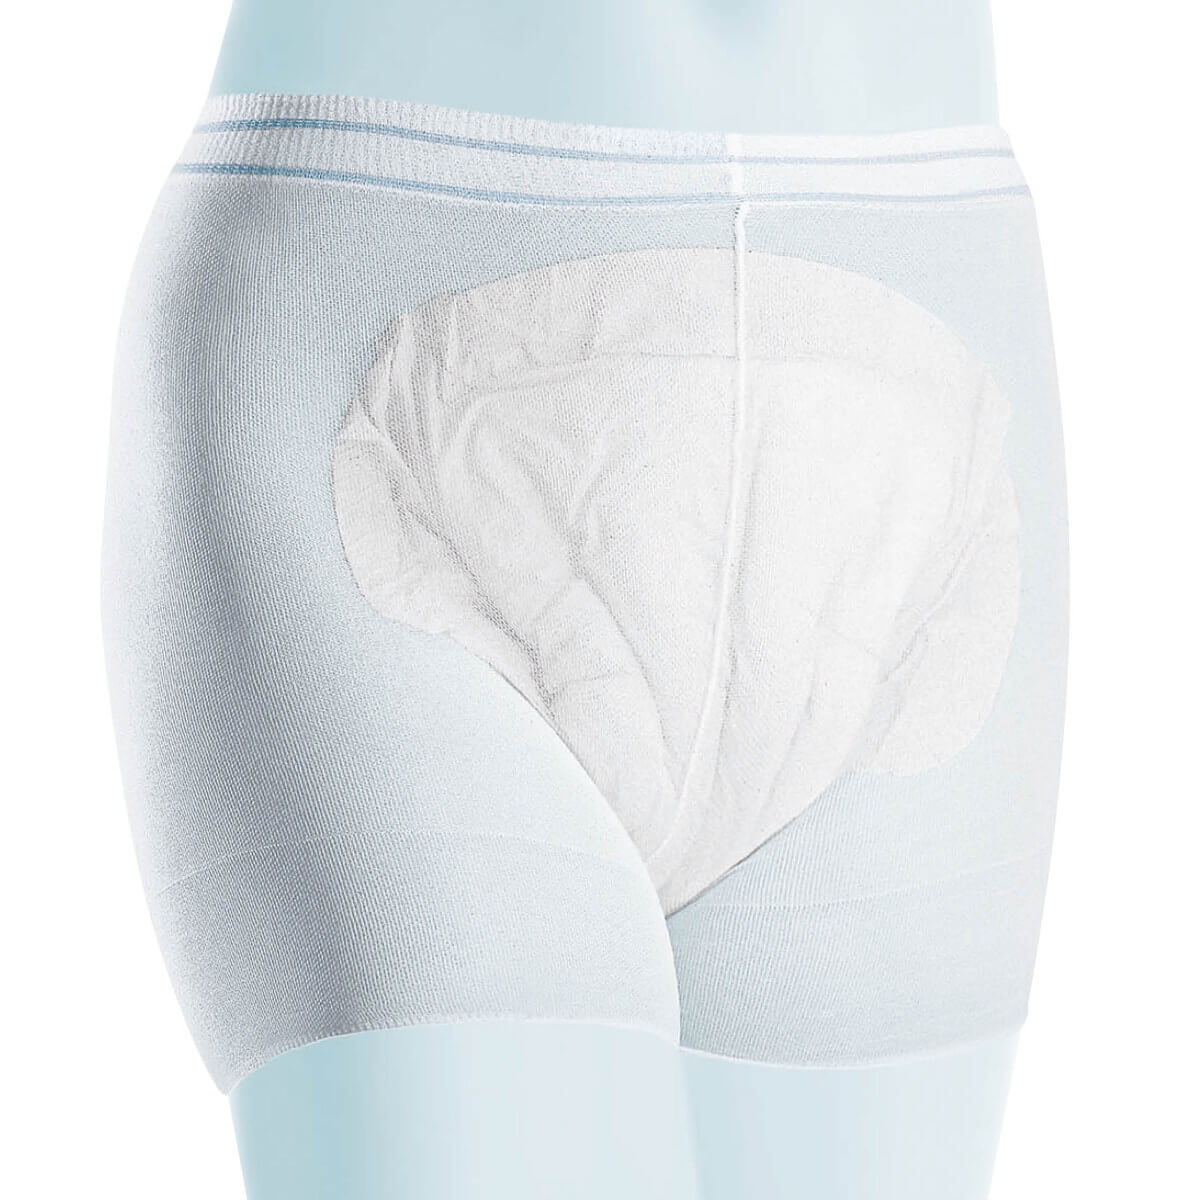 Meditrade Panty fix panties | DocCheck Shop